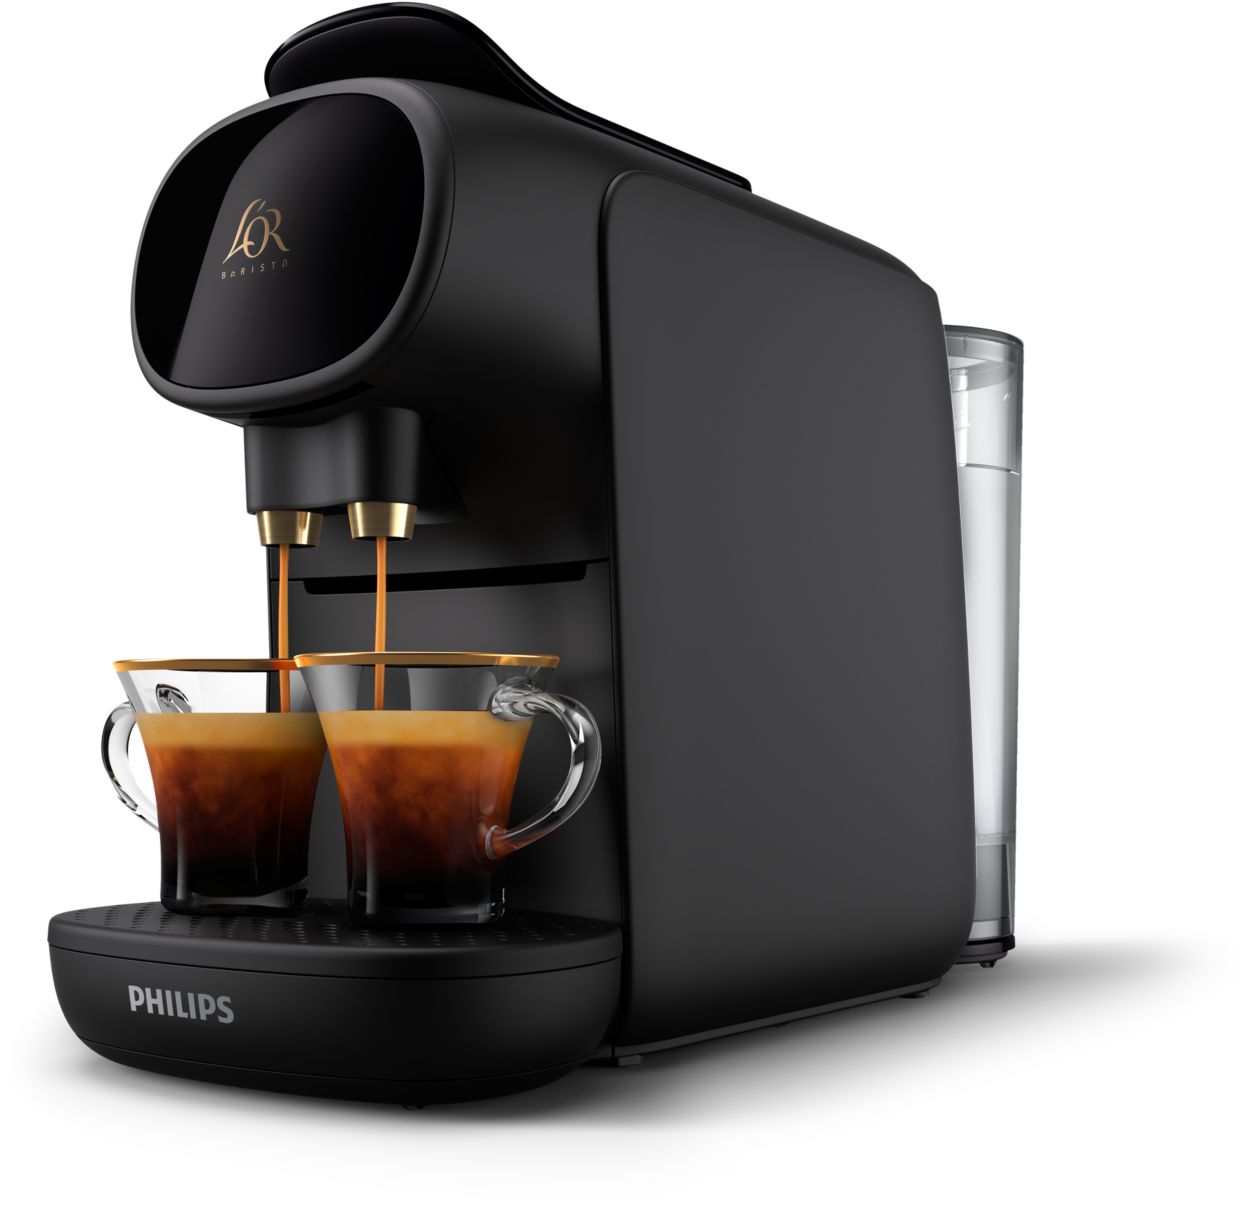 Soldes Machine à café et Cafetière jusqu'à -40% : Profitez-en !